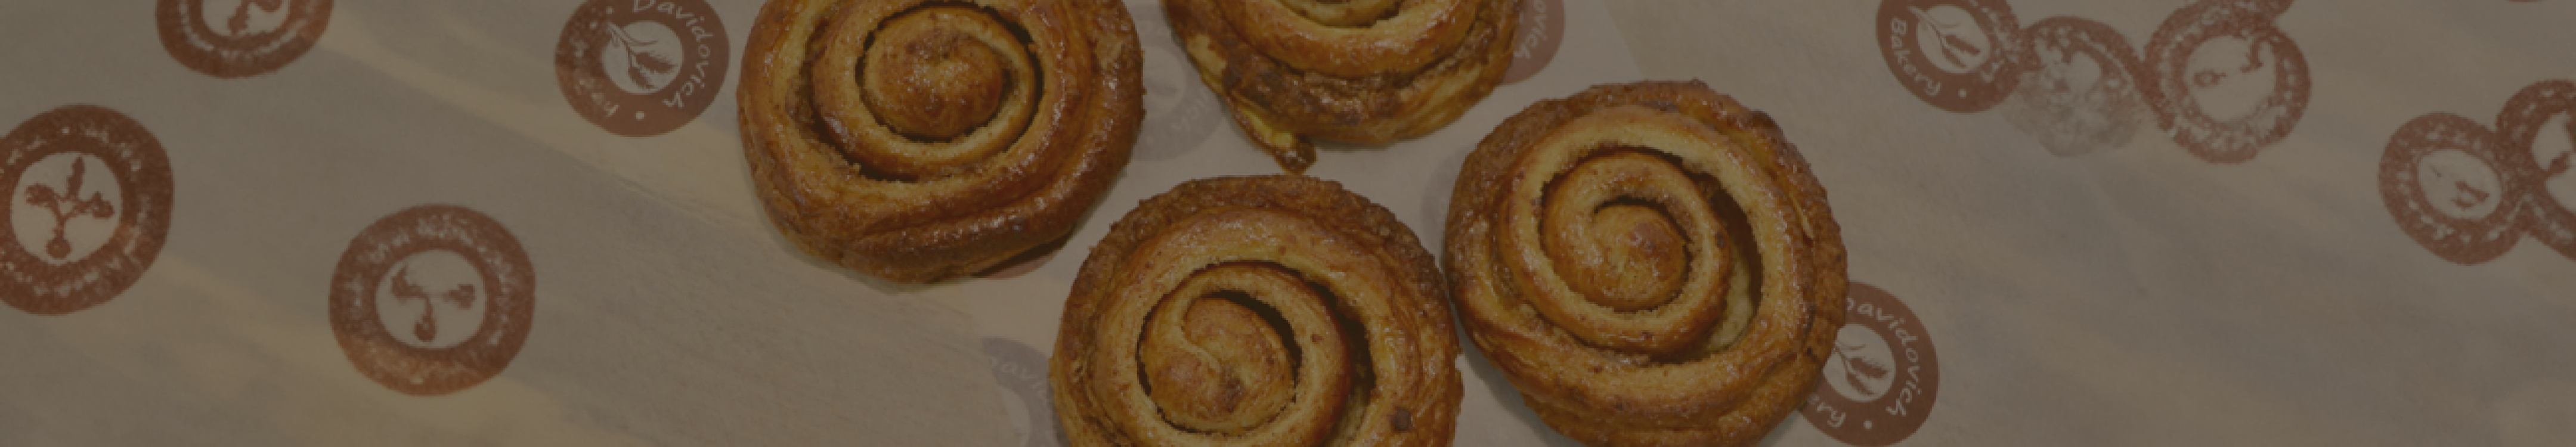 Buy Baked Bakery Items: Pasteries & Cookies Online